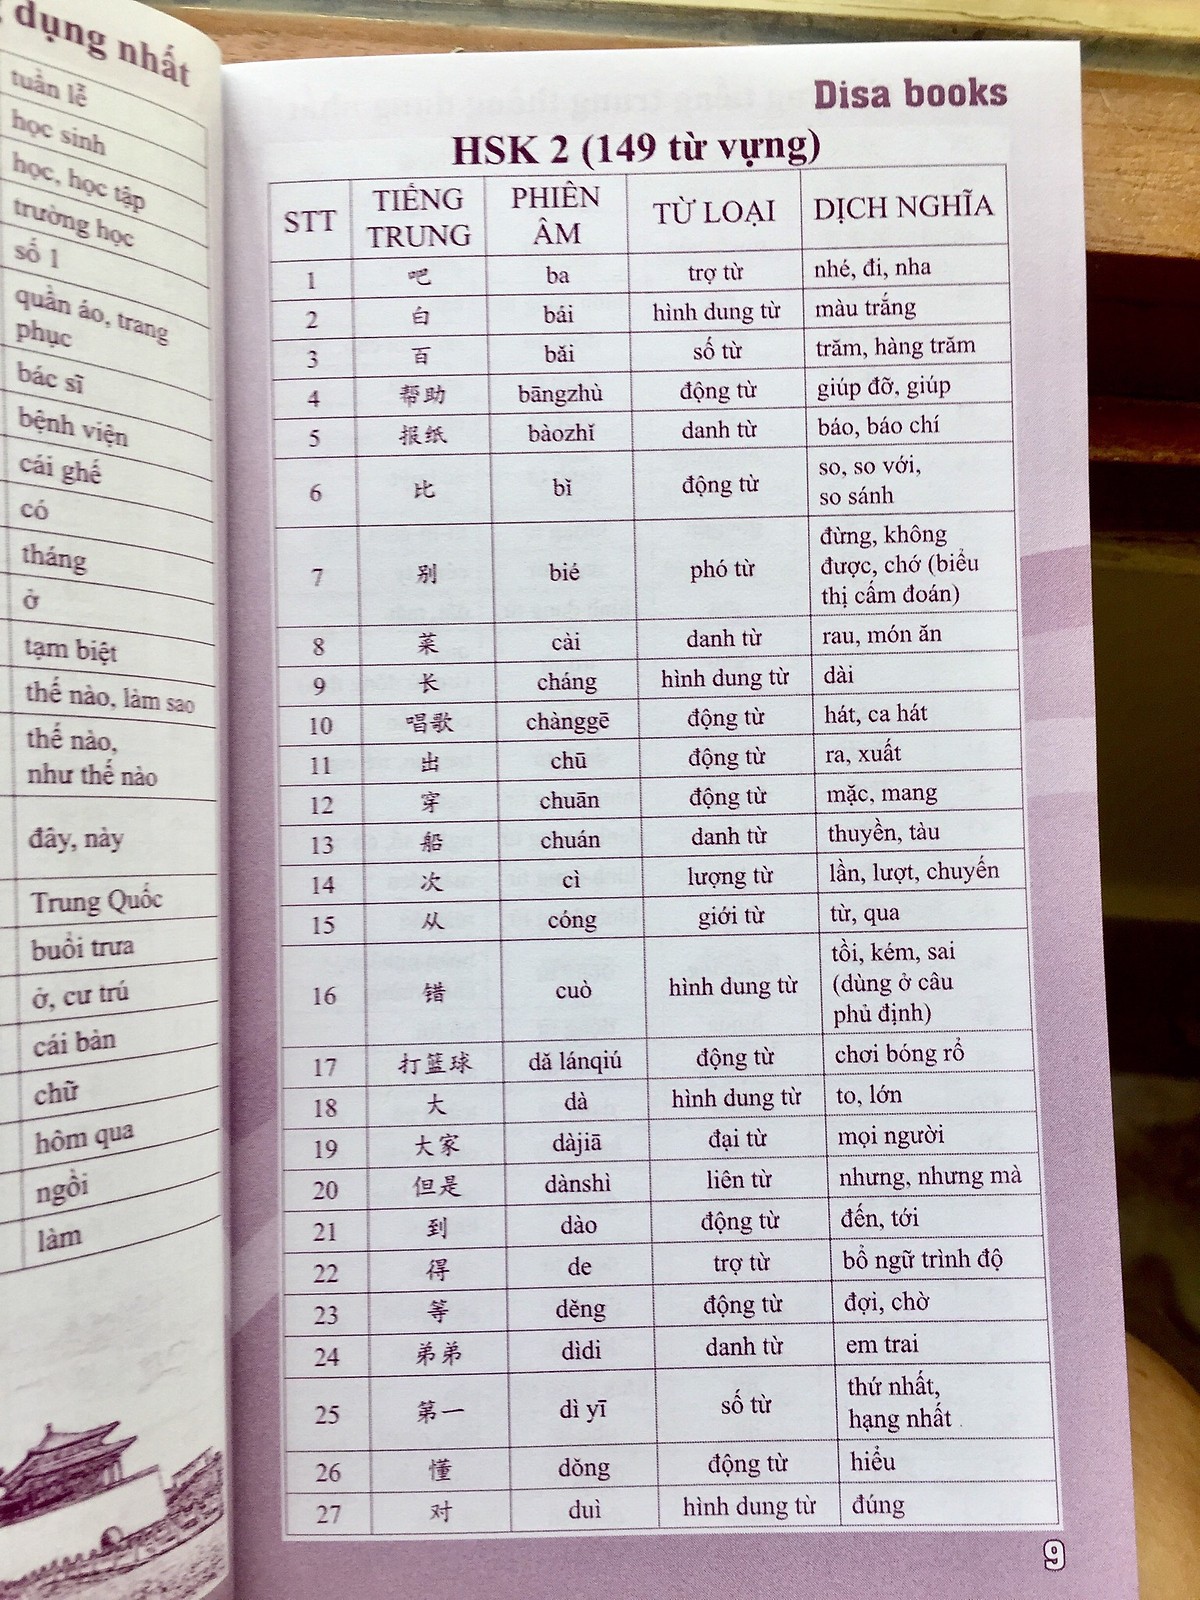 Combo 2 sách: 5000 từ vựng tiếng Trung thông dụng nhất theo khung từ vựng HSK1 đến HSK6 và Sổ tay từ vựng HSK1-2-3-4 và TOCFL band A  +DVD tài liệu